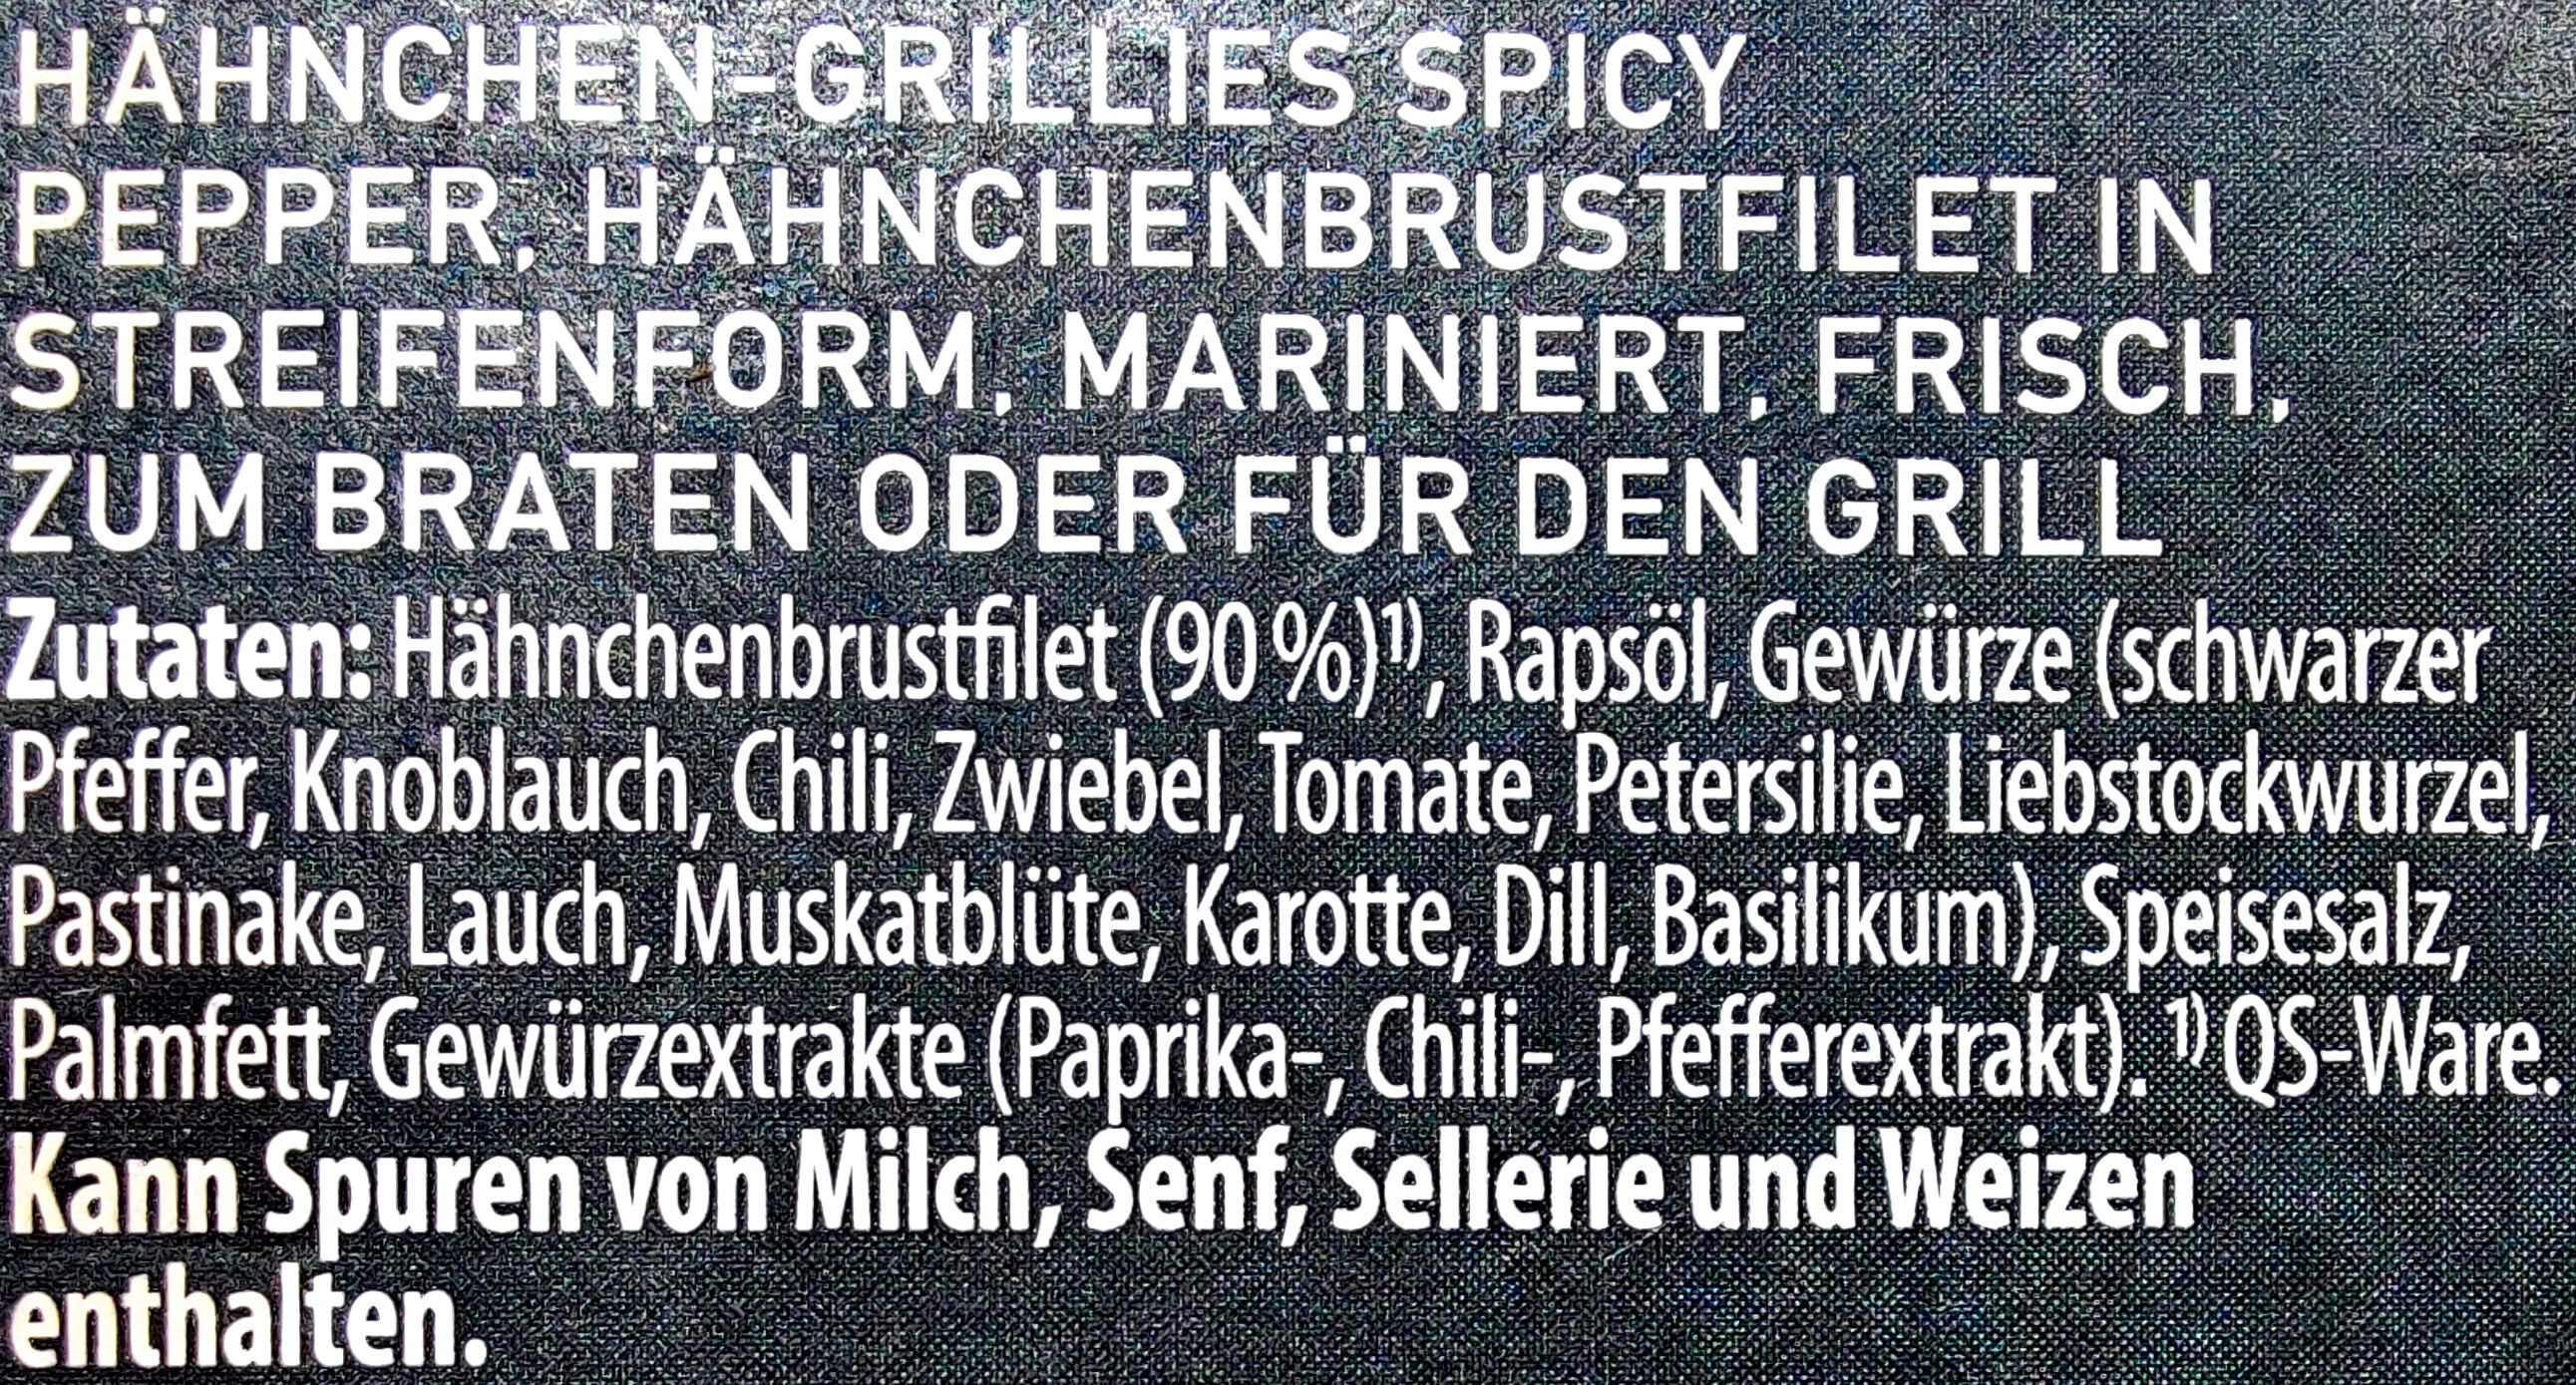 Hähnchen-Grillies Spicy Pepper - Zutaten